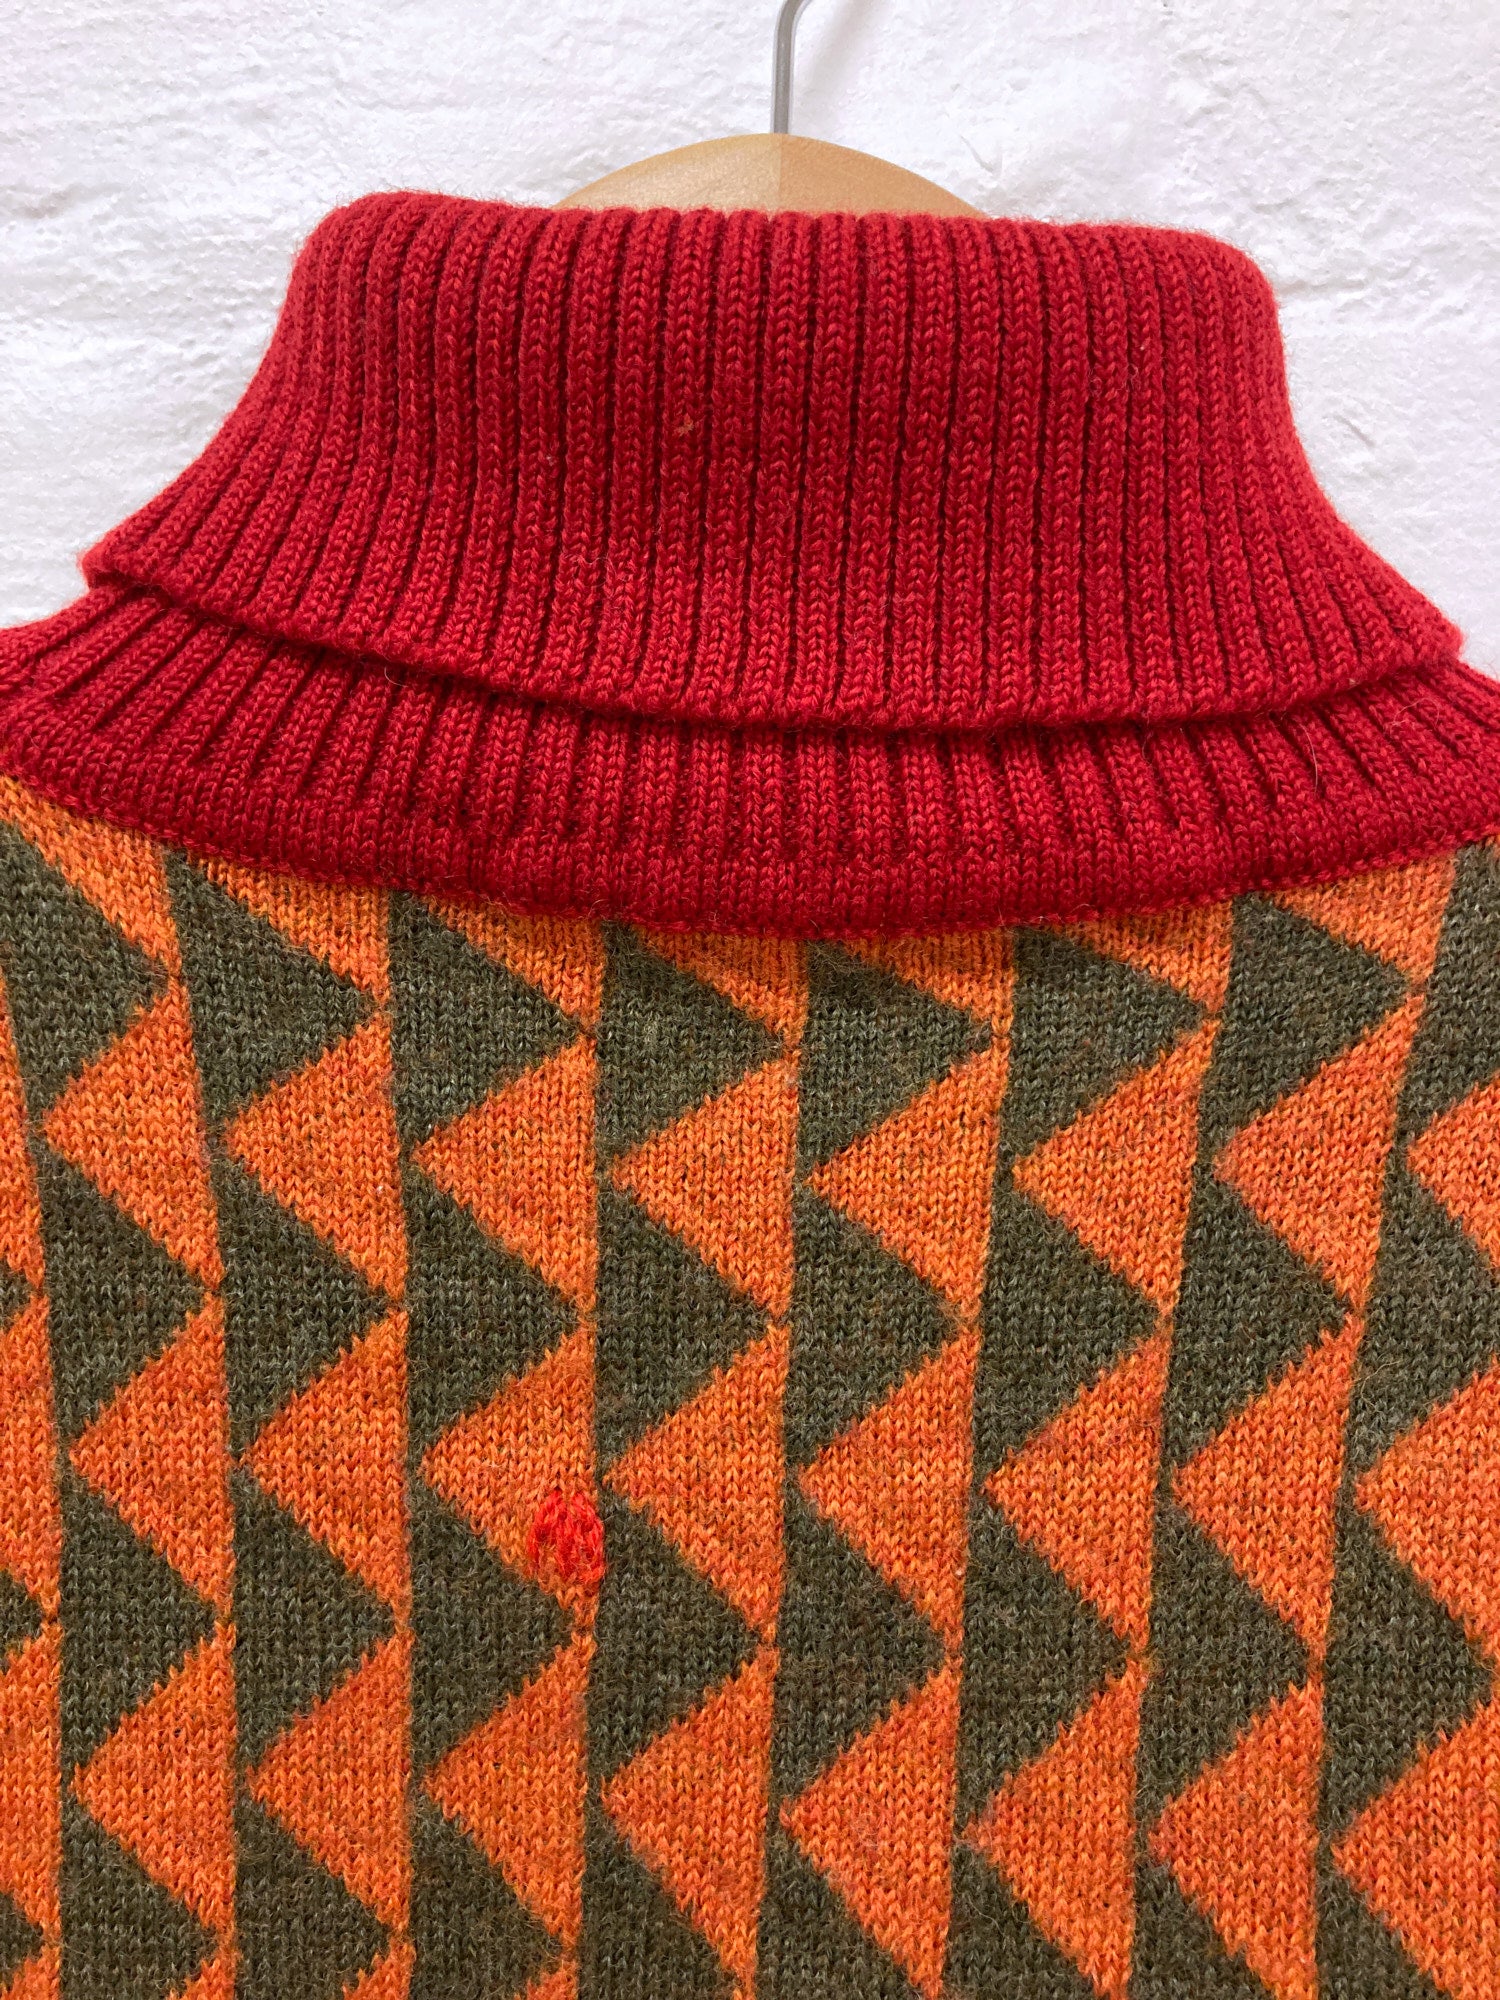 Paul Smith 1990s orange green wool triangle pattern turtleneck jumper - M